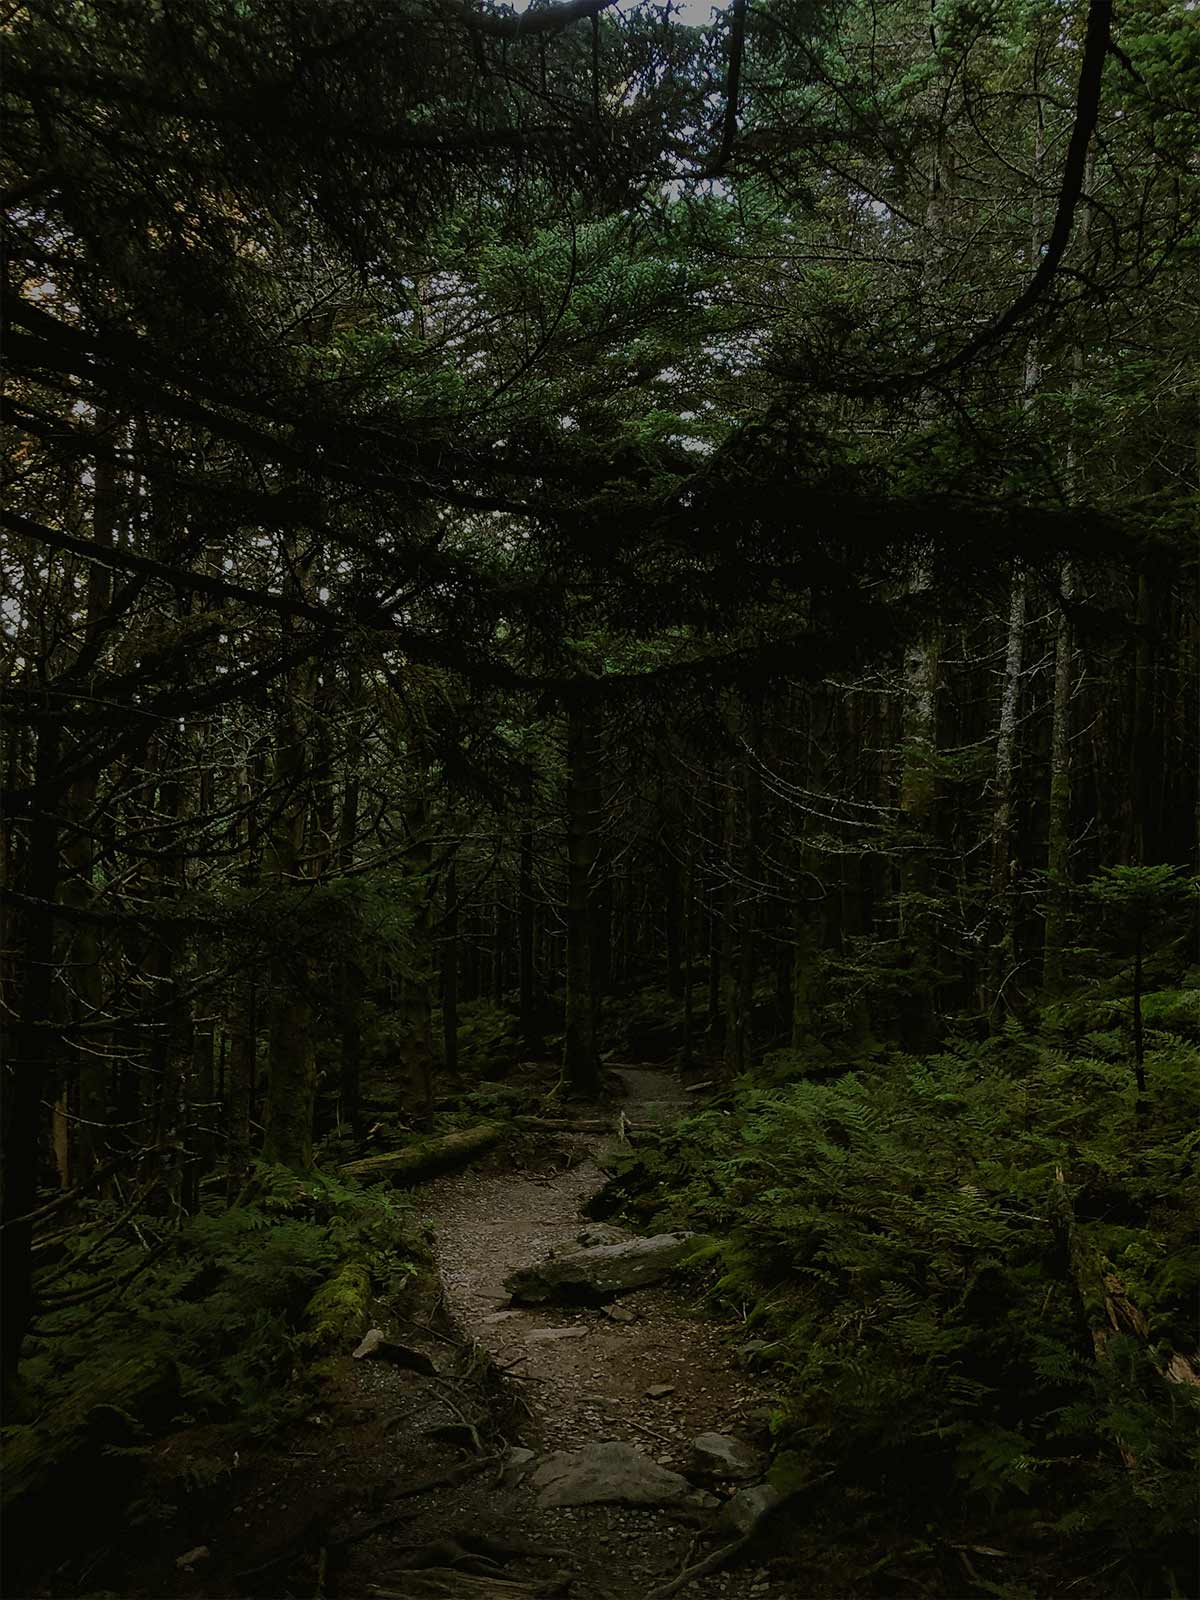 sentier pédestre dans une forêt boisée